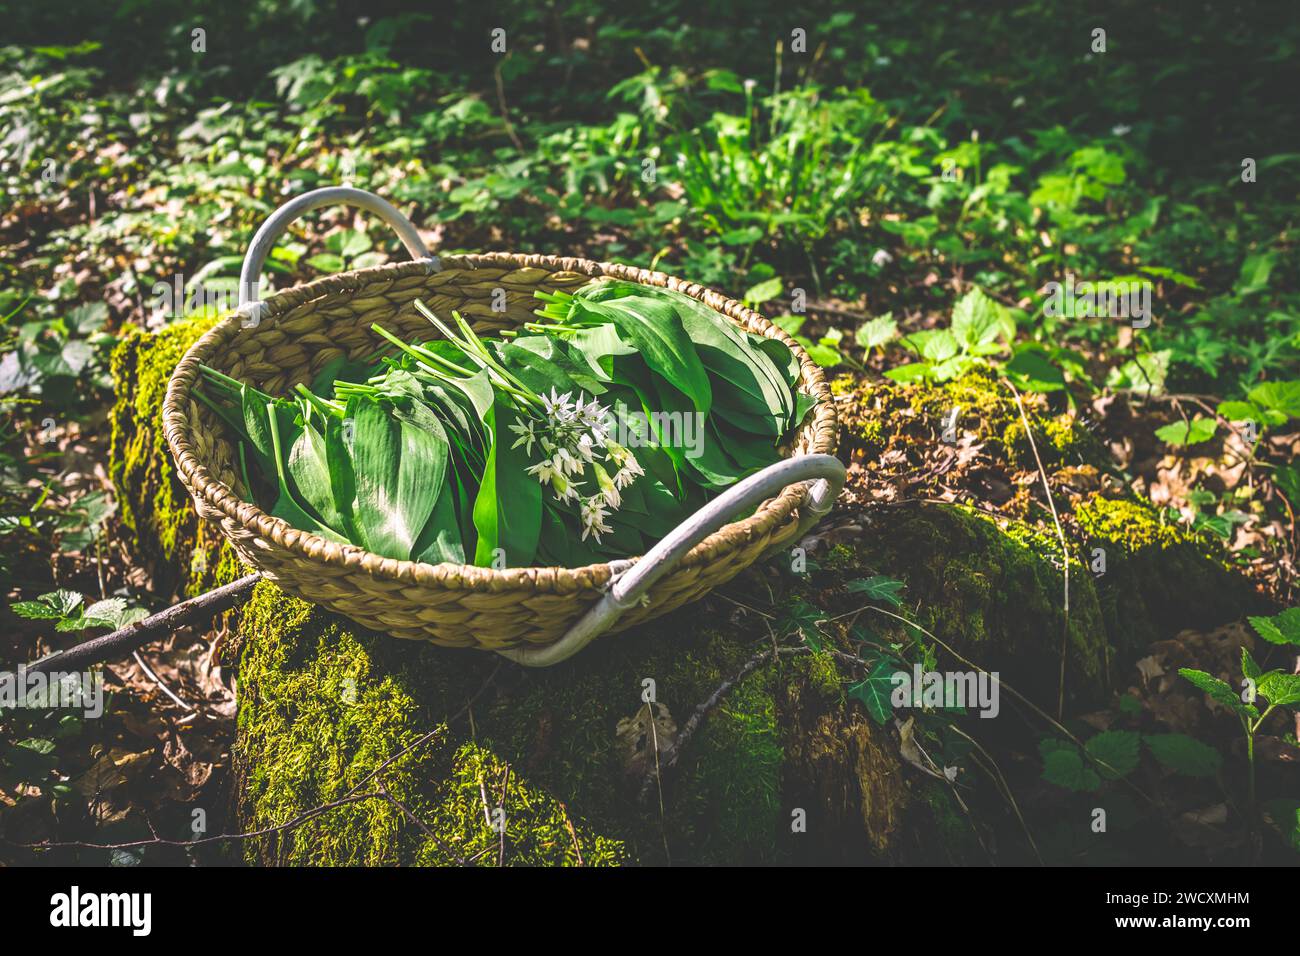 Wilde Knoblauch (allium ursinum) im Wald ernten. Wilder Knoblauch, Ramson, Cowleekes, Buckrams, HolzKnoblauch, Bärenlauchpflanzen wachsen in einem Wald Stockfoto